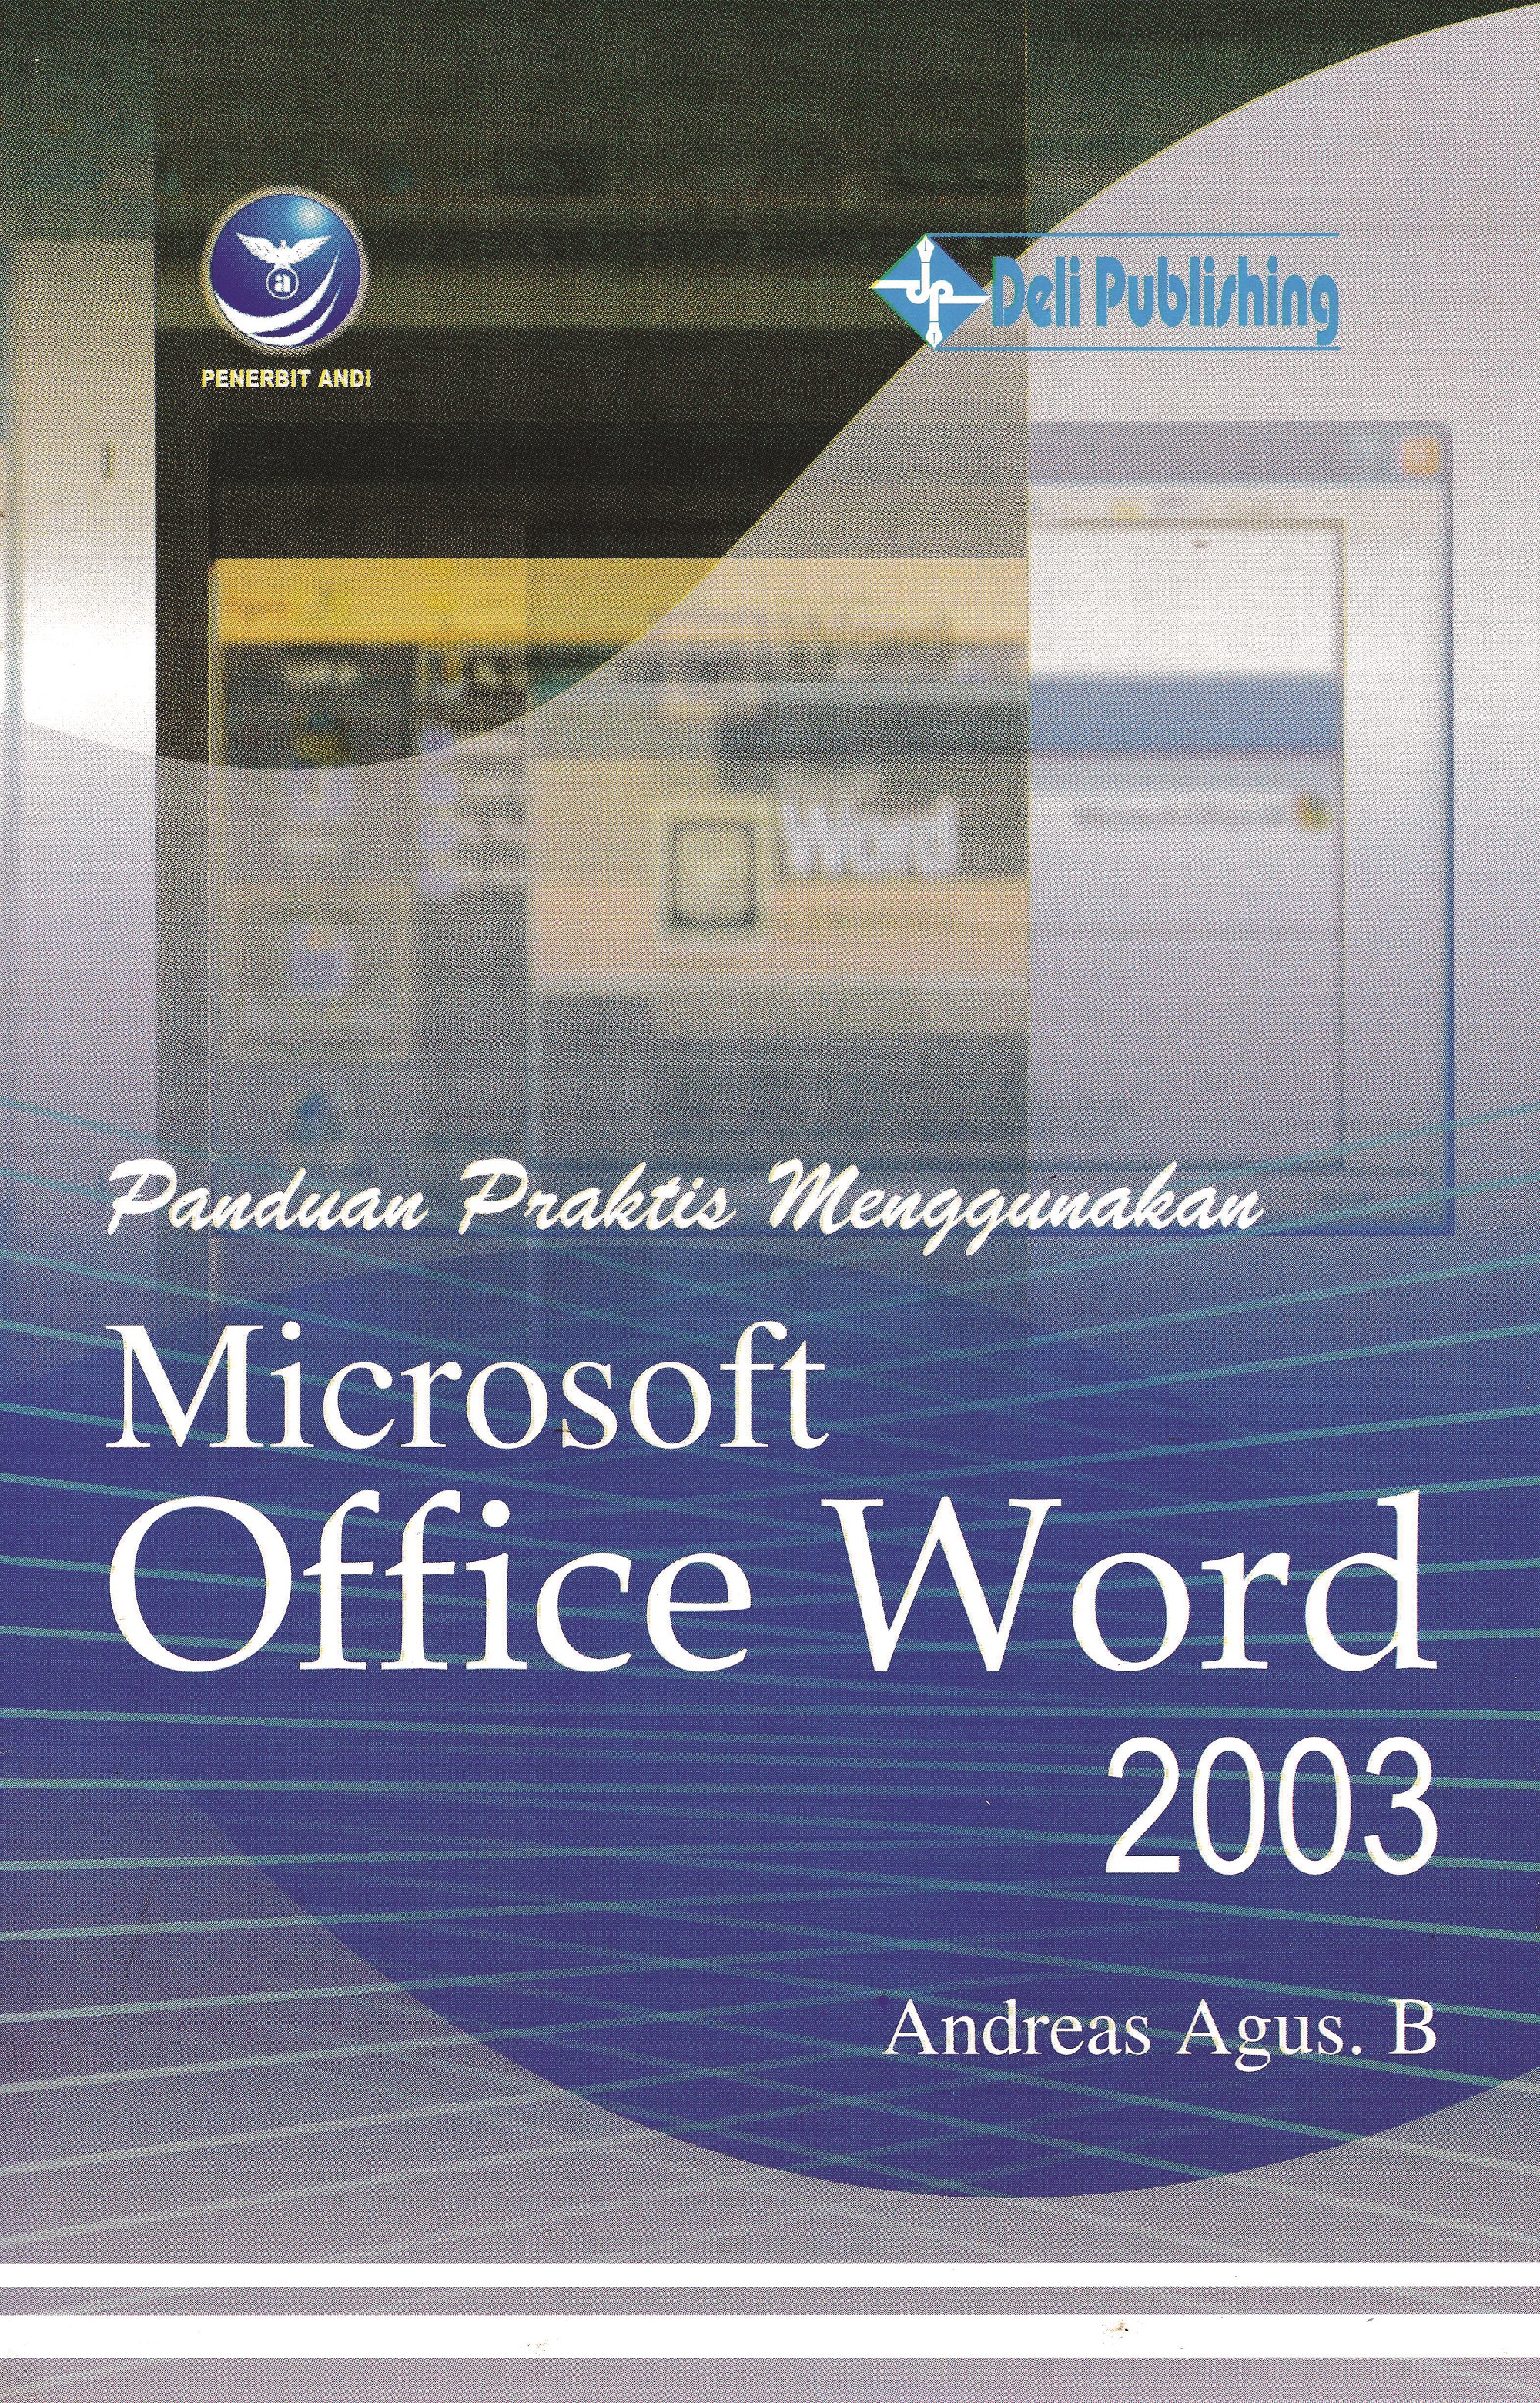 Menggunakan microsoft office word 2003 [sumber elektronis]